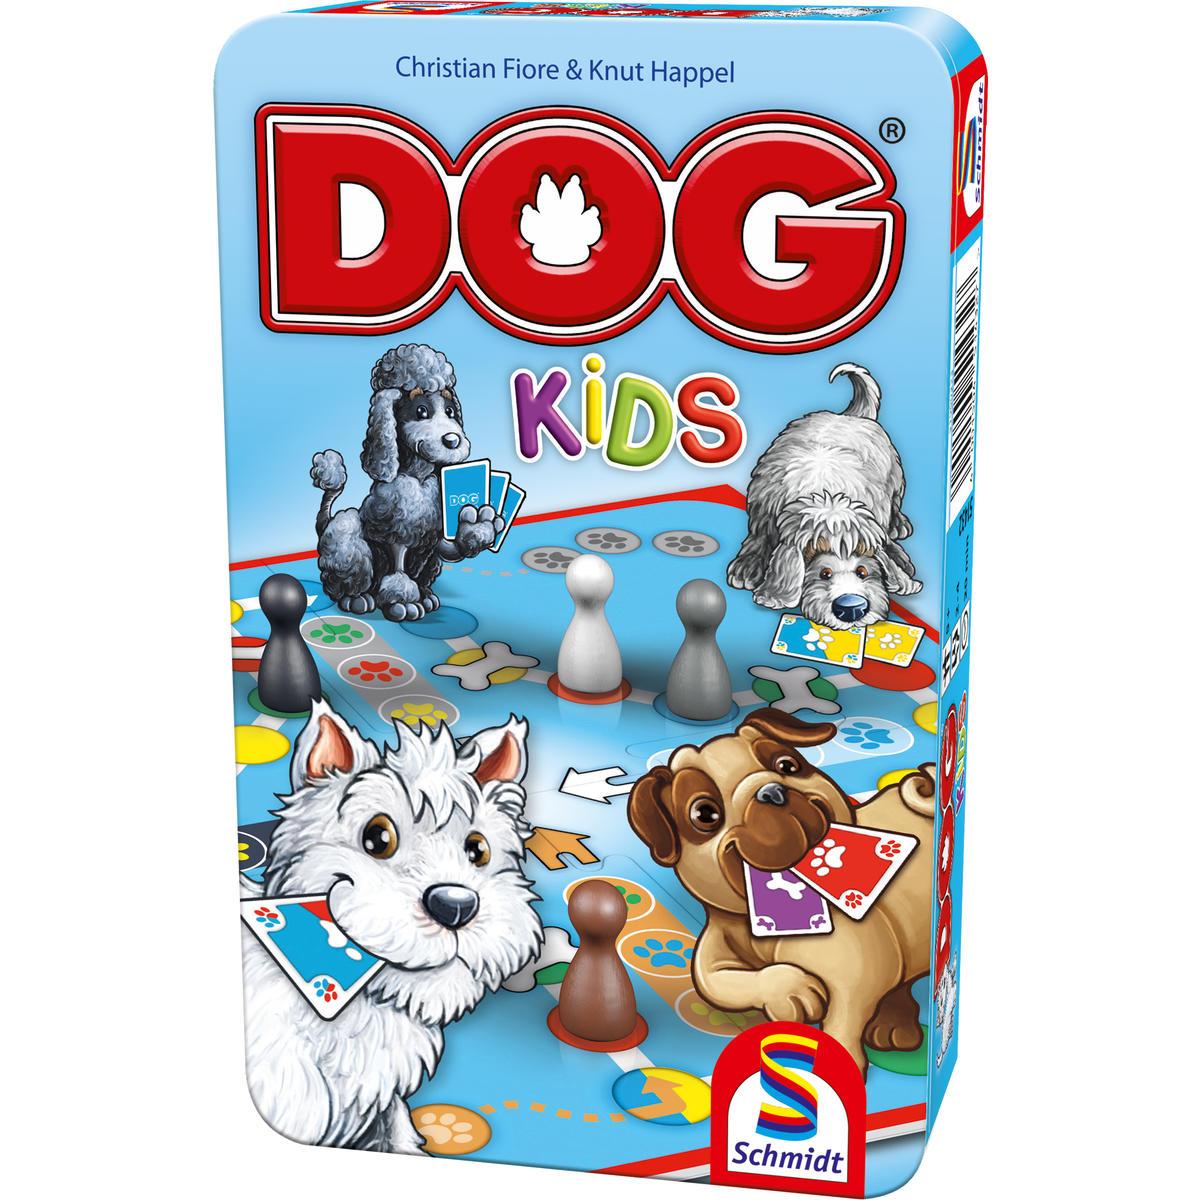 SPIELE nein Bring-Mich-Mit-Spiel in - Gesellschaftsspiel DOG® SCHMIDT Kids Metalldose